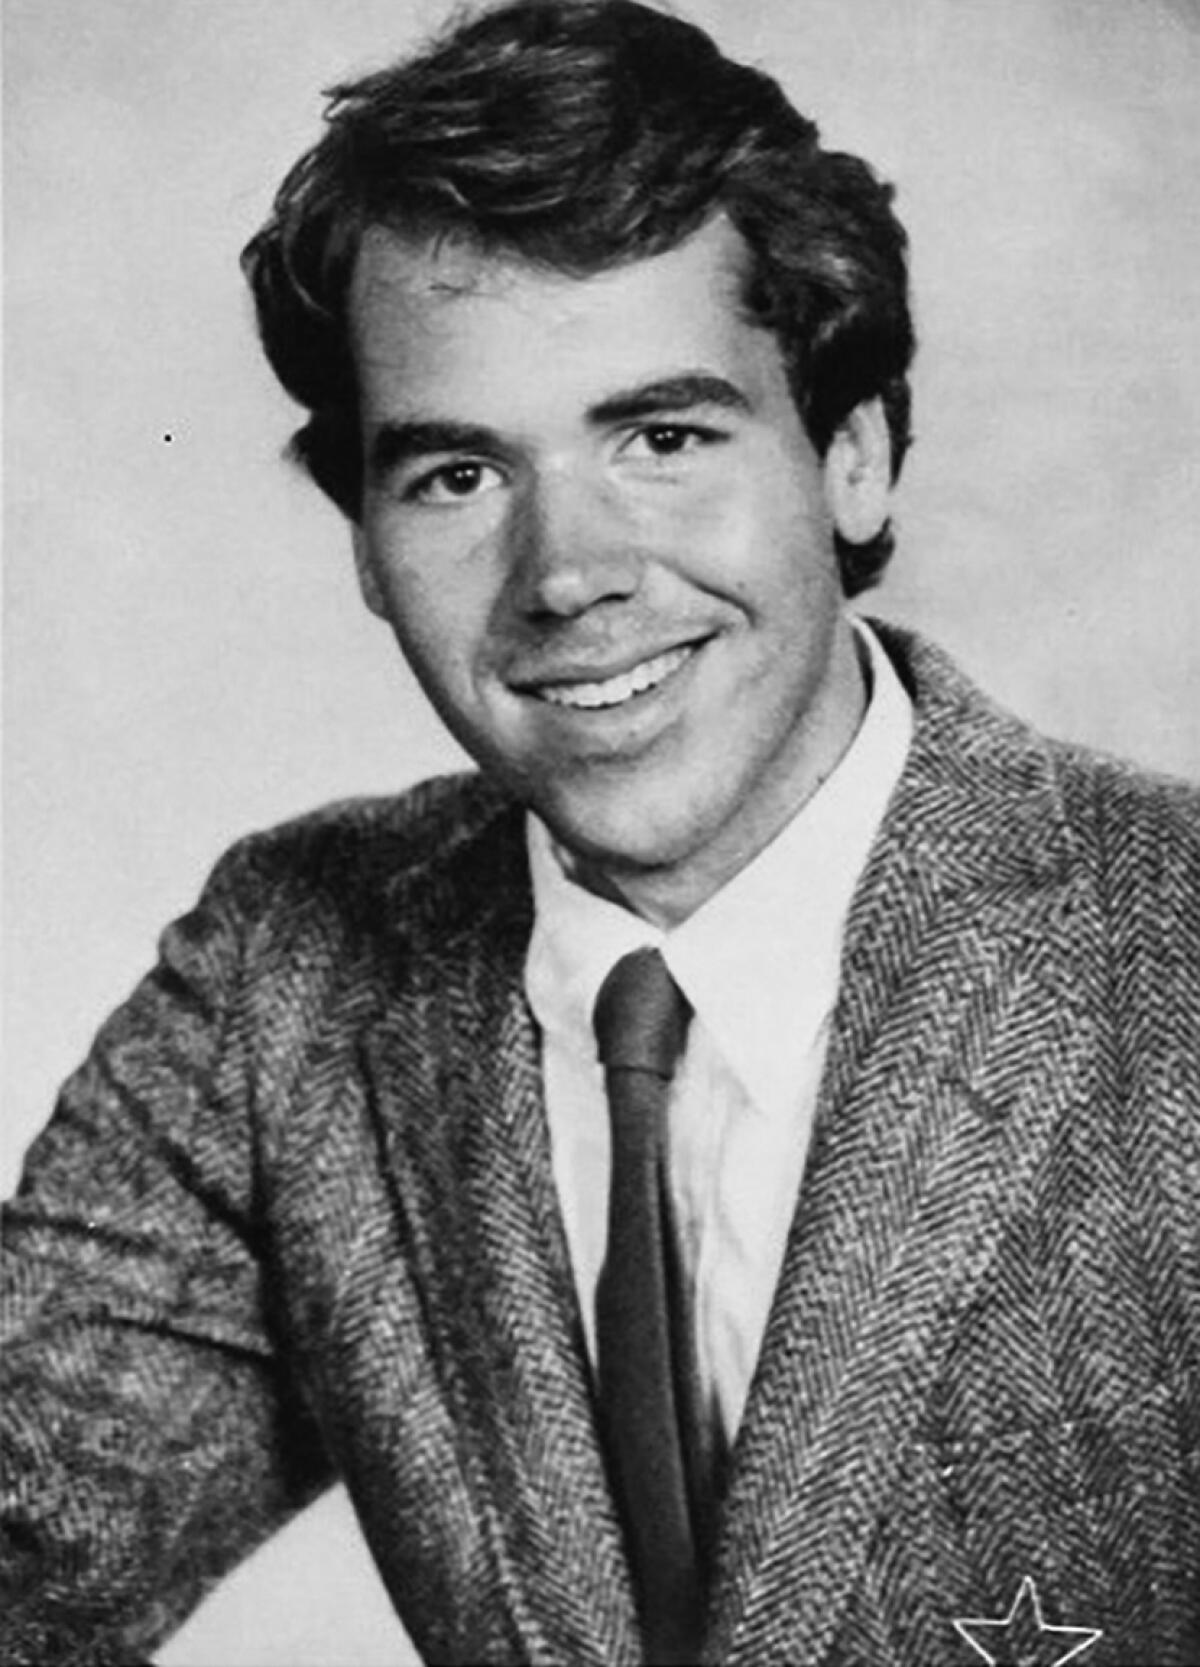 Bret Easton Ellis, in a 1982 yearbook photo from the Buckley School in Sherman Oaks.